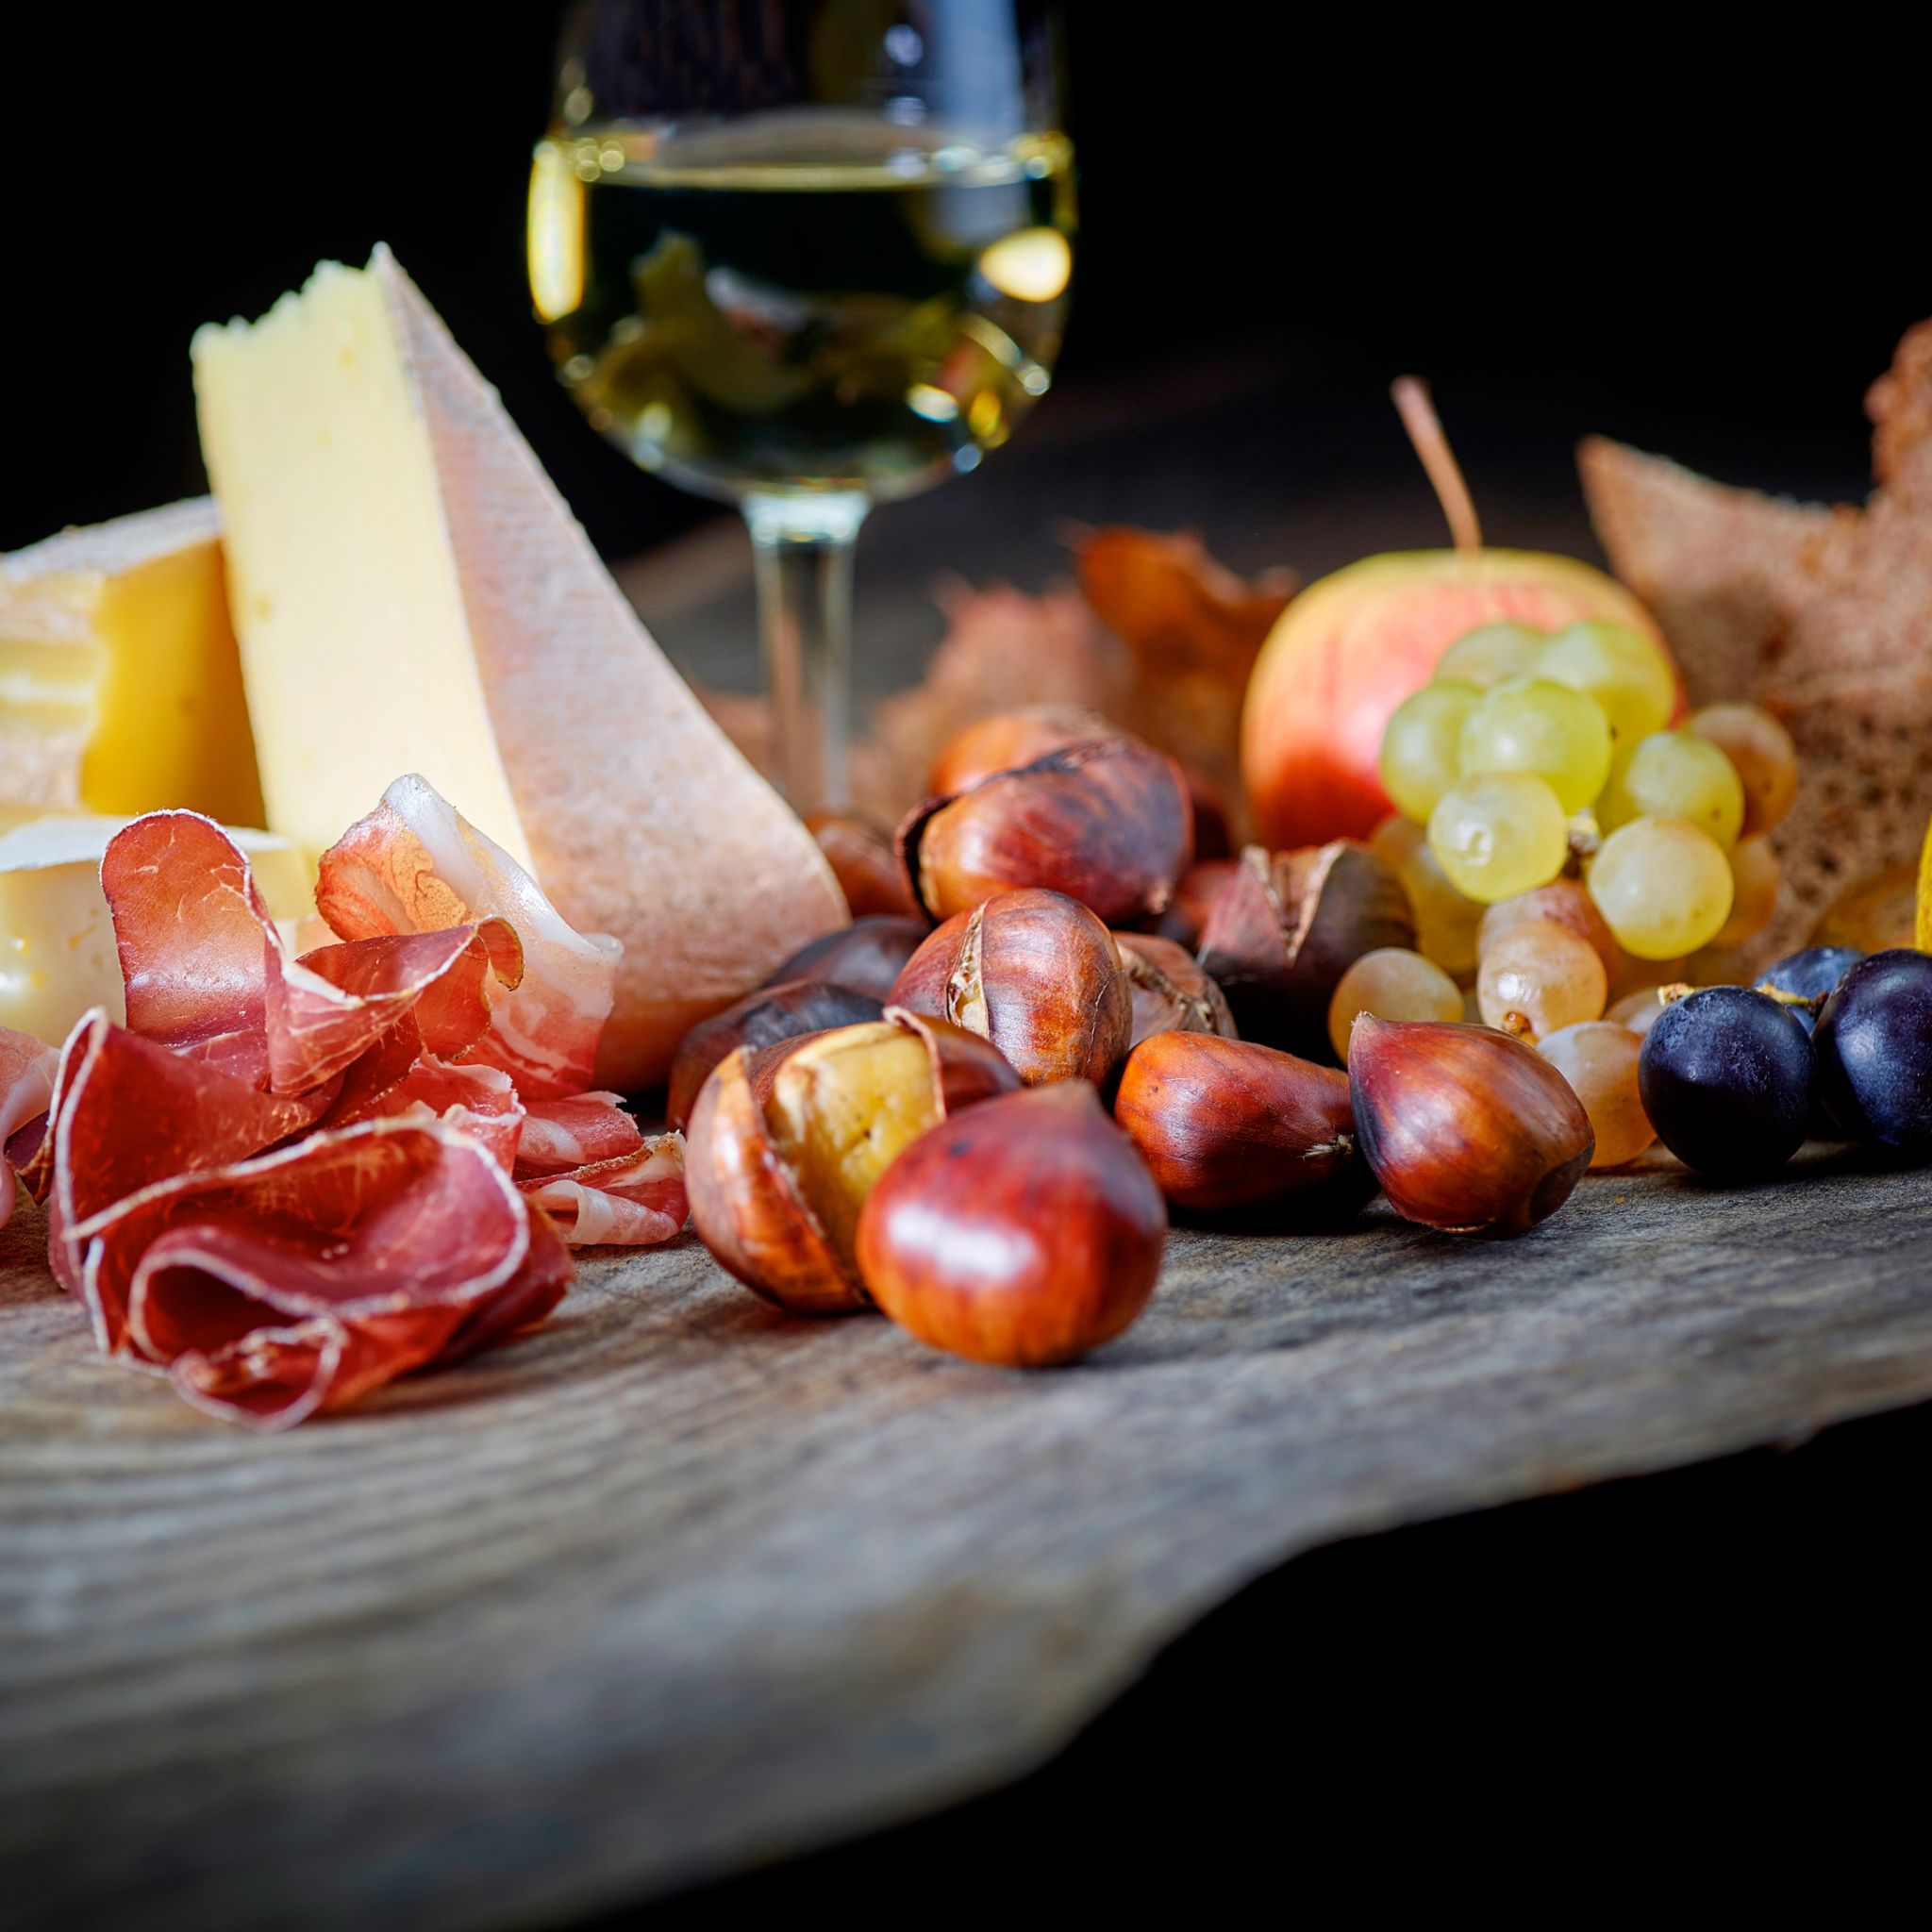 Brisolée, marrons chauds avec viande séchée, fromage et fruits, spécialité du Valais